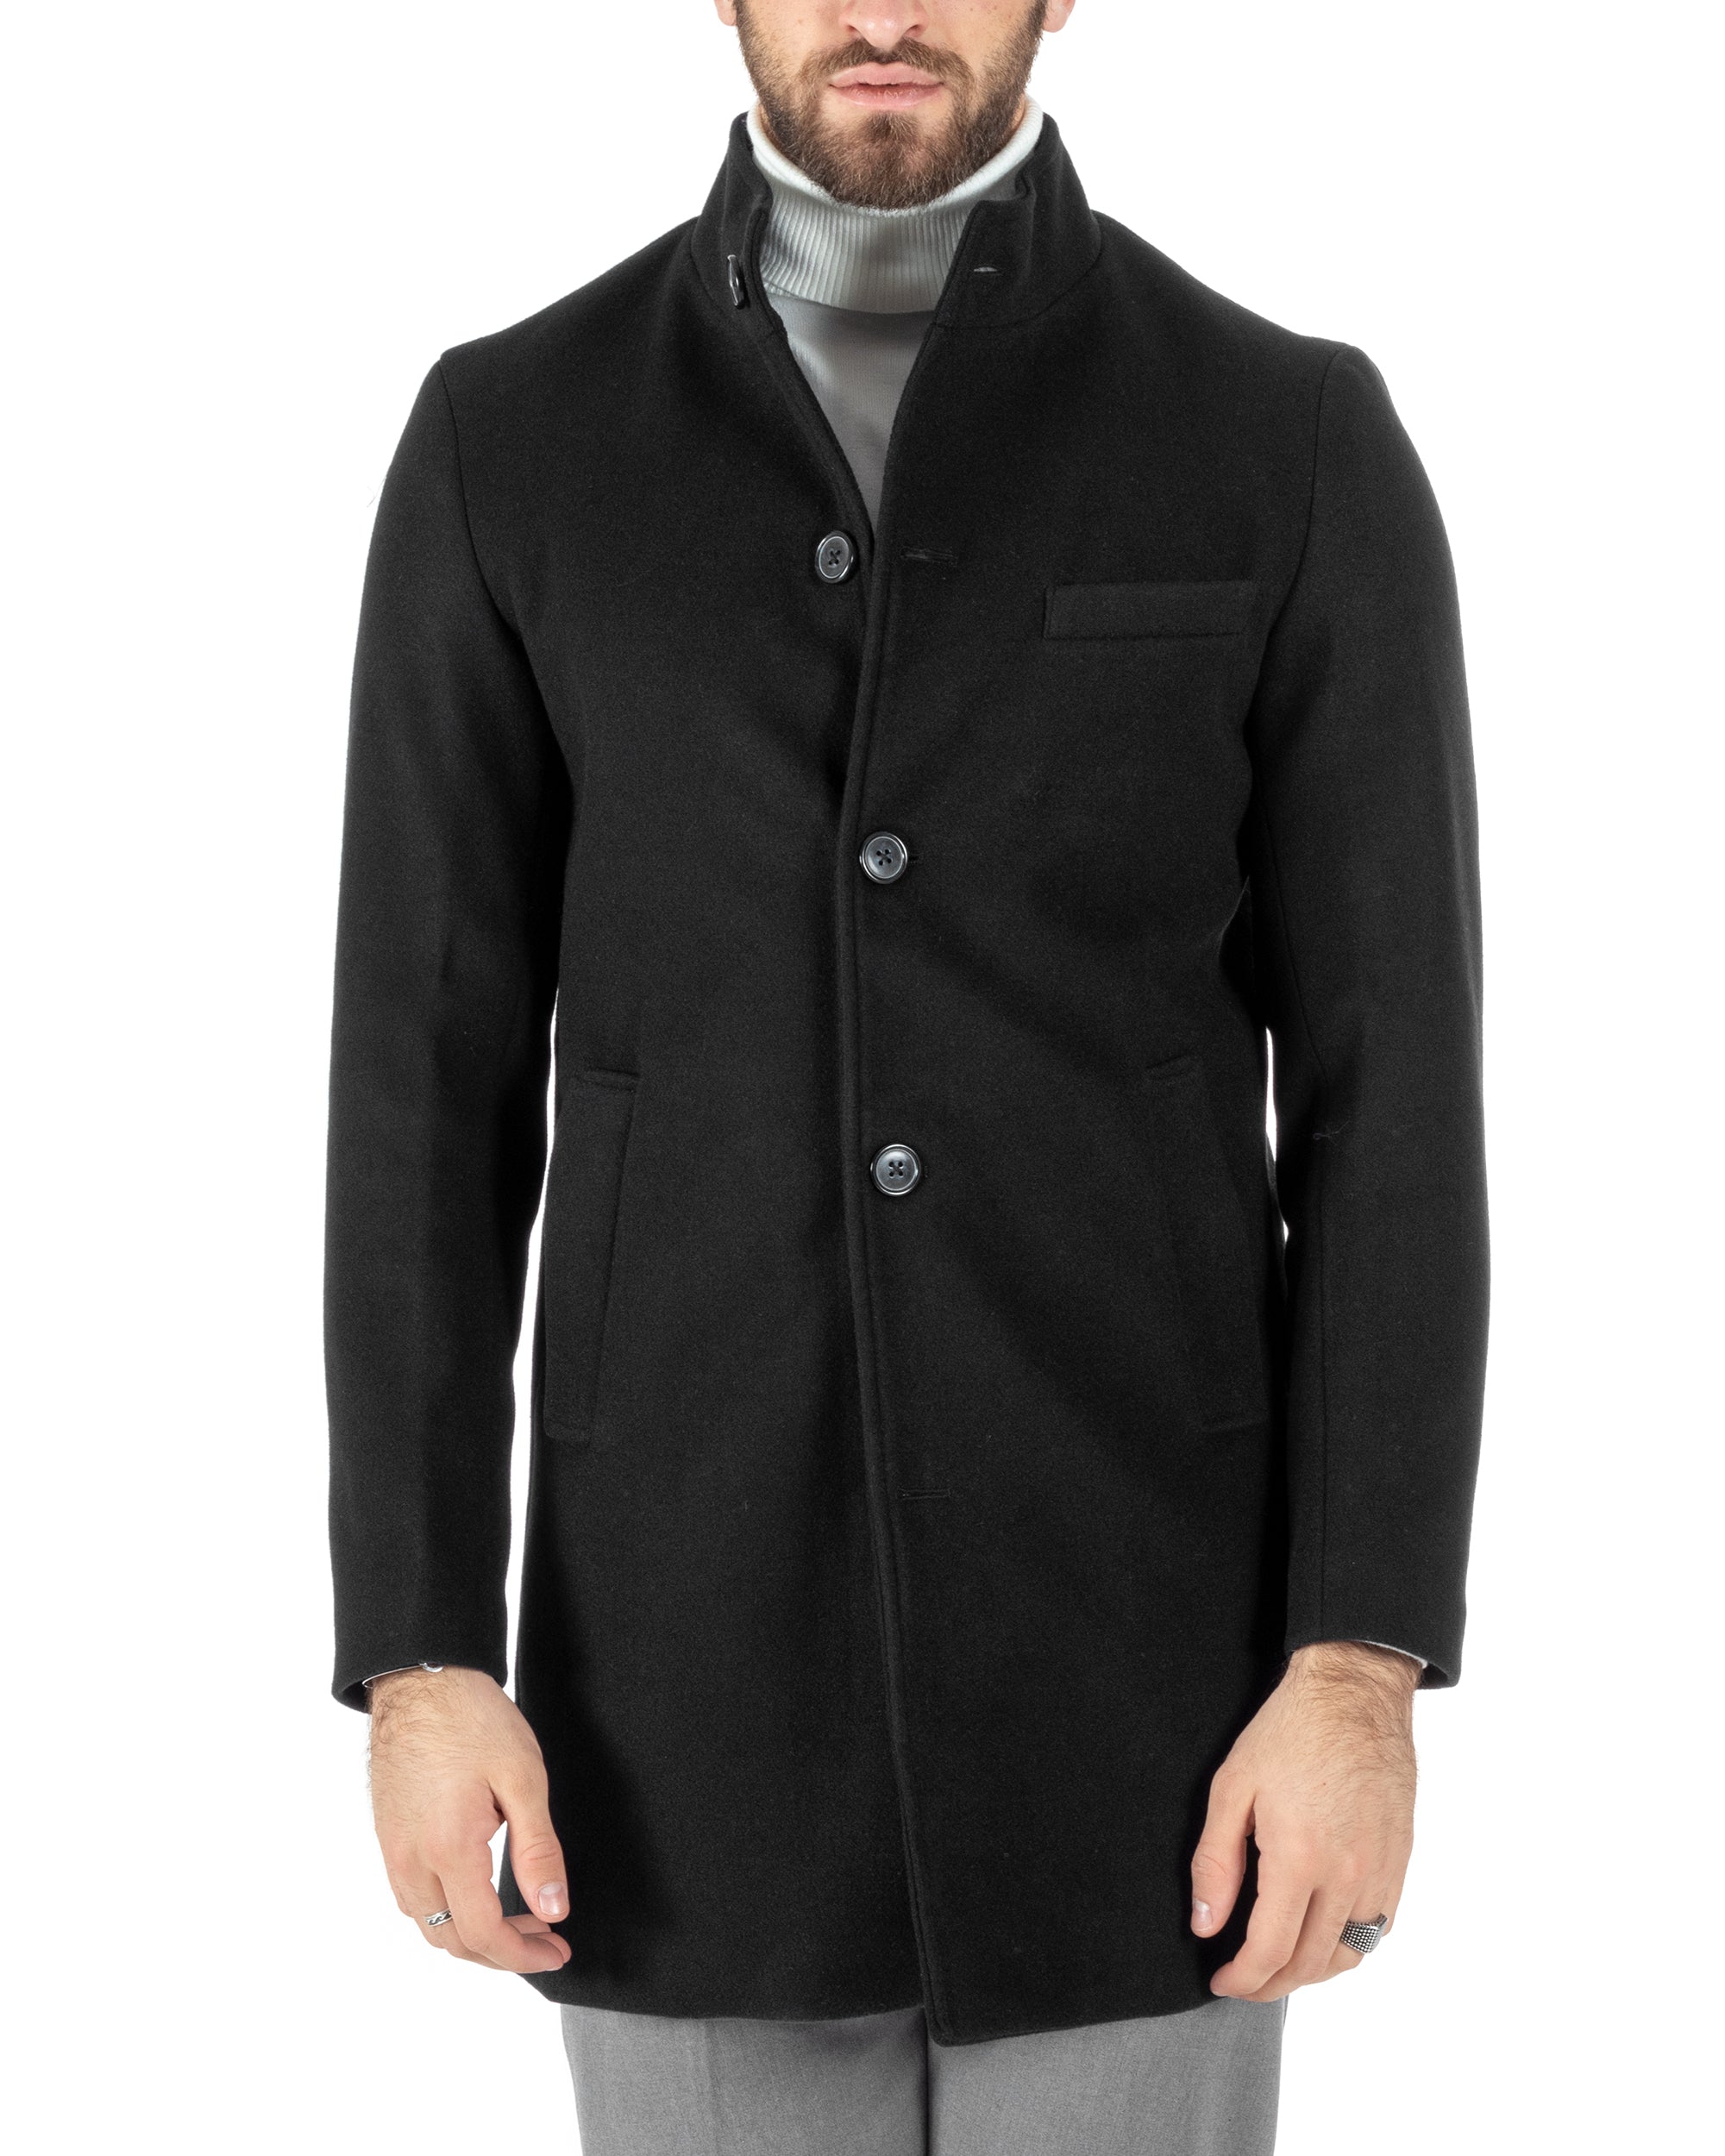 Cappotto Monopetto Uomo Giacca Collo Coreano Giaccone Lungo Nero Baronetto Elegante GIOSAL-CO1016A